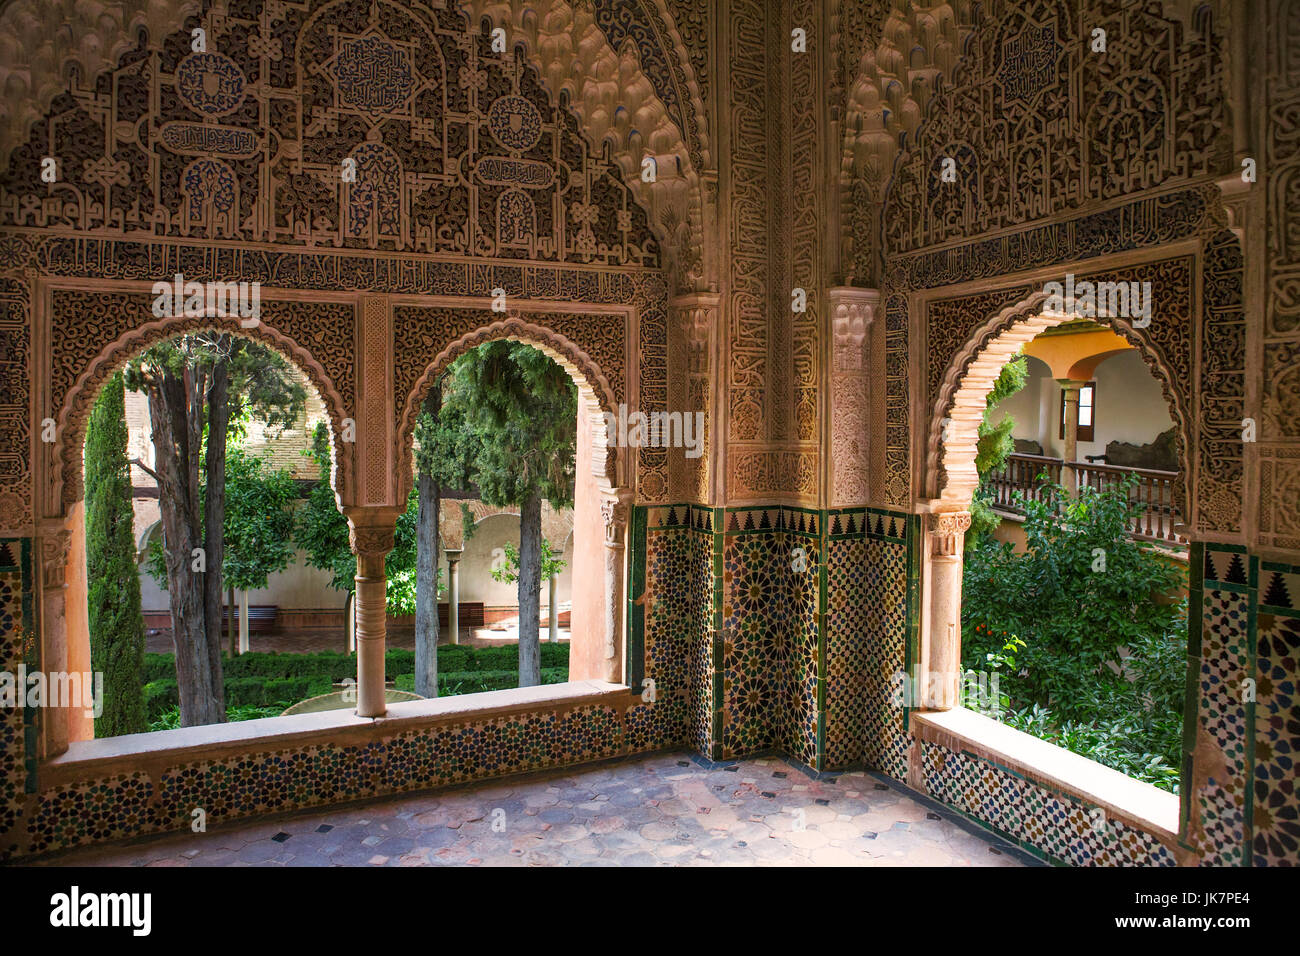 Mirador de Daraxa, Palacio de los Leones, La Alhambra, Granada: an  exquisite little salon looking out onto the Jardines de Daraxa Stock Photo